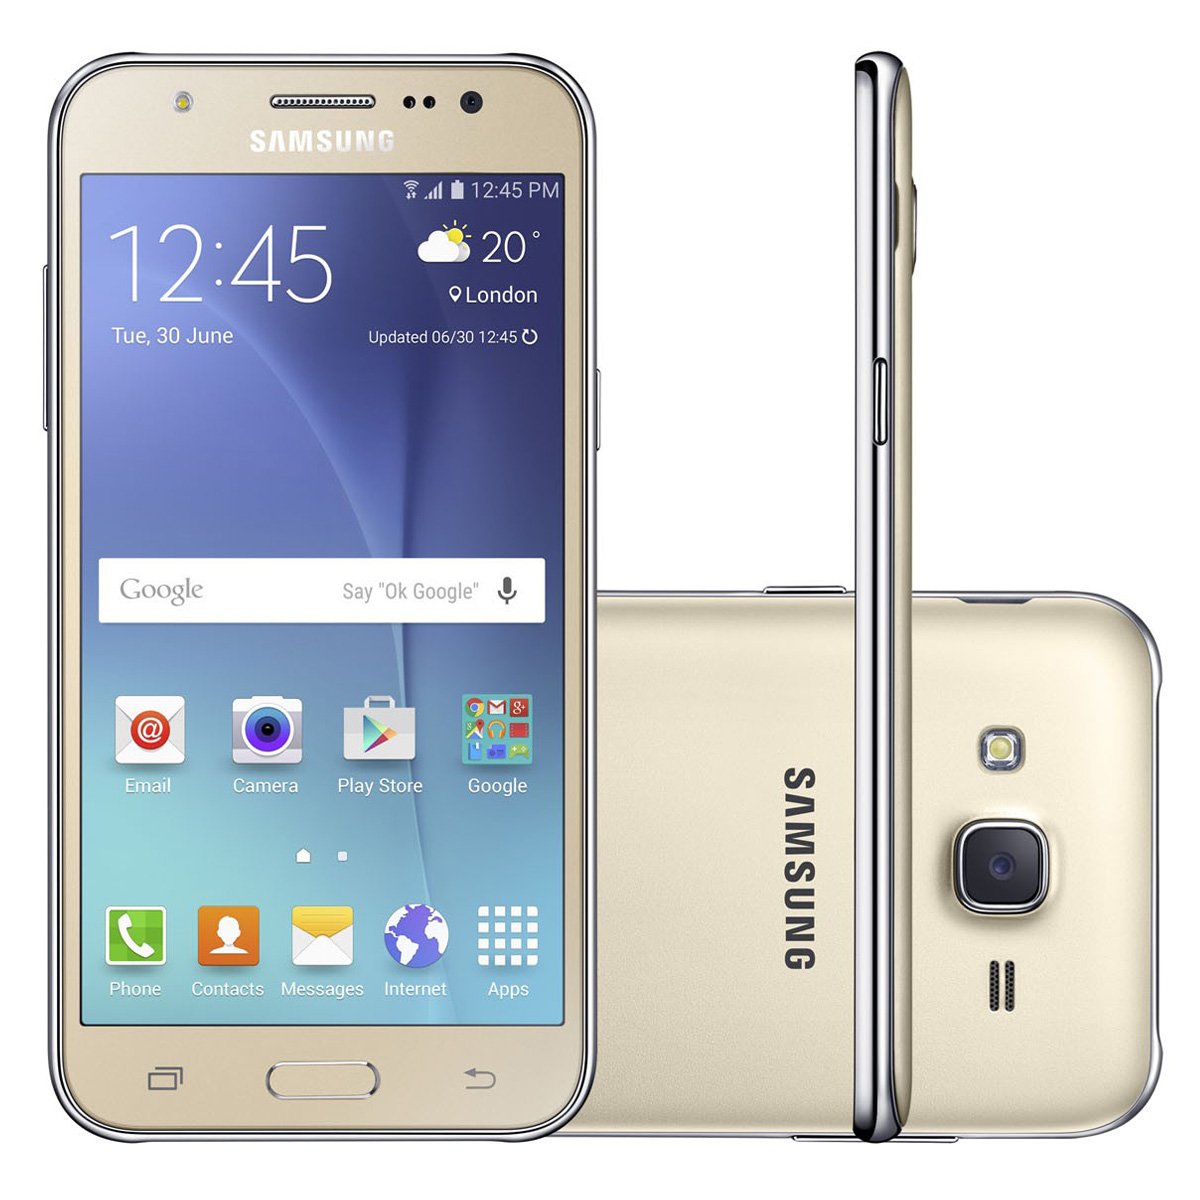 Cómo borrar el historial de navegación y llamadas en mi Samsung Galaxy J1, J3, J5, J7